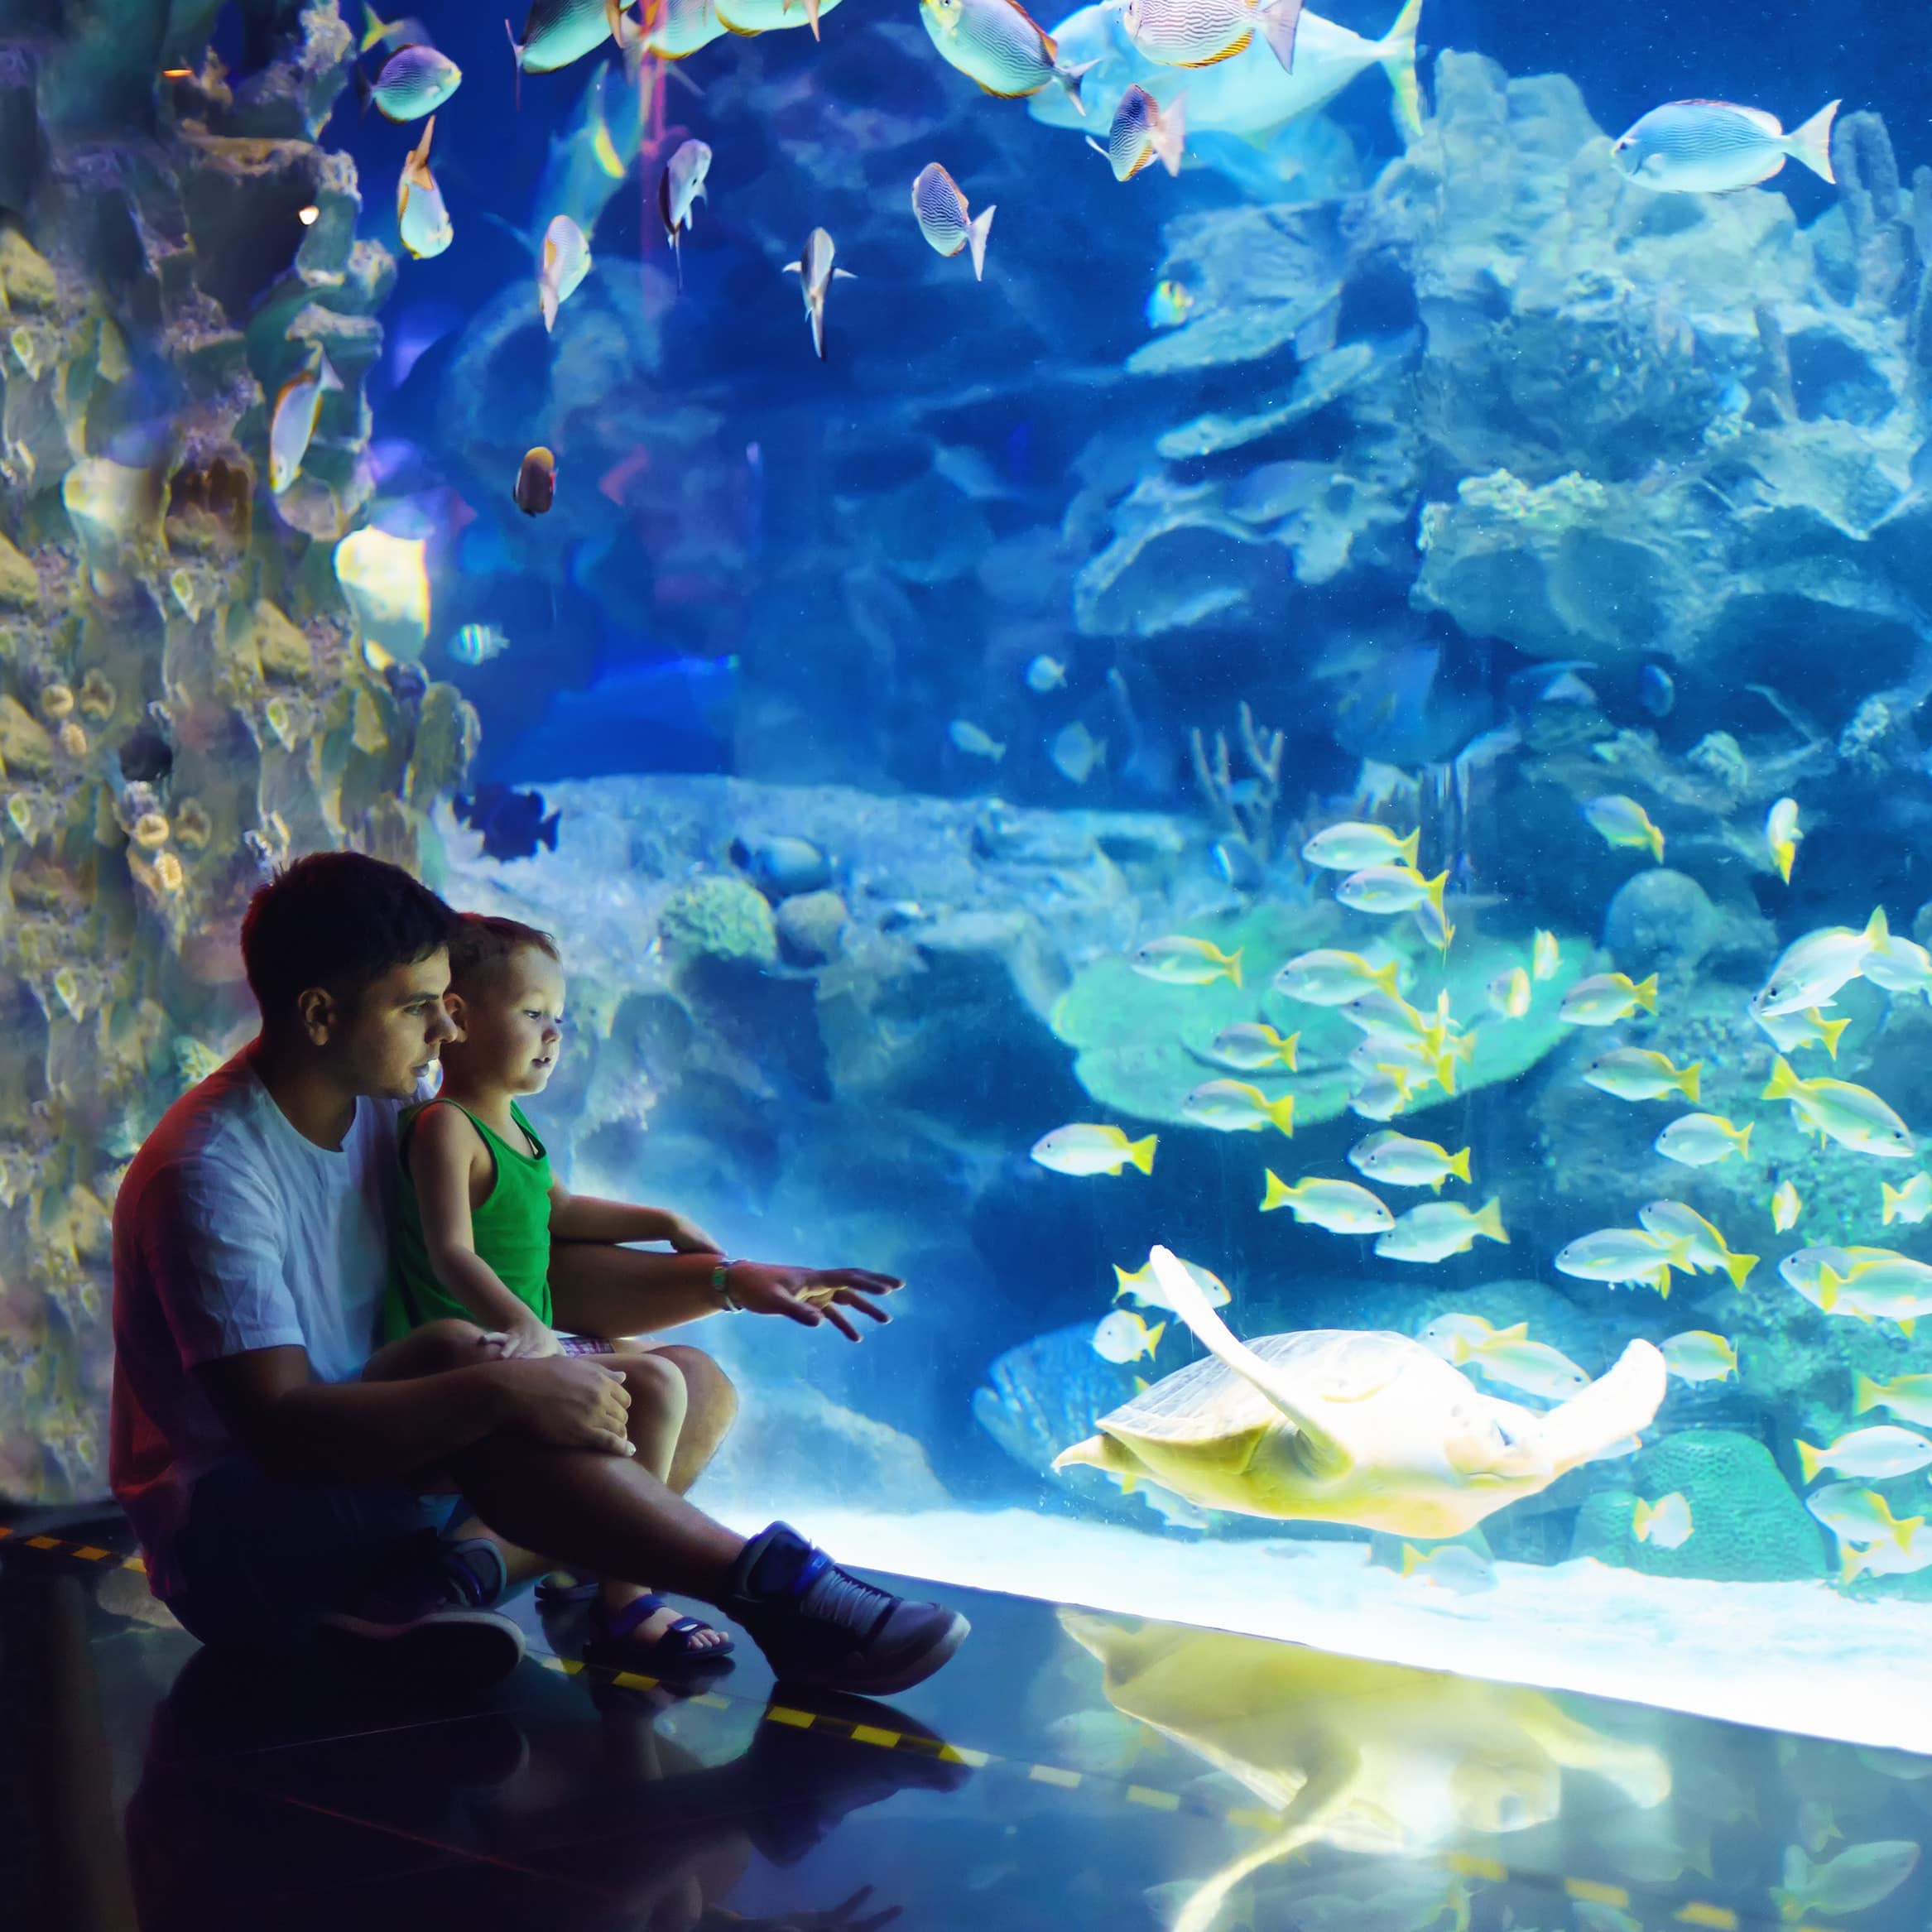 Vater und Sohn sitzen auf dem Fußboden vor einem großen Aquarium und beobachten die Fische.